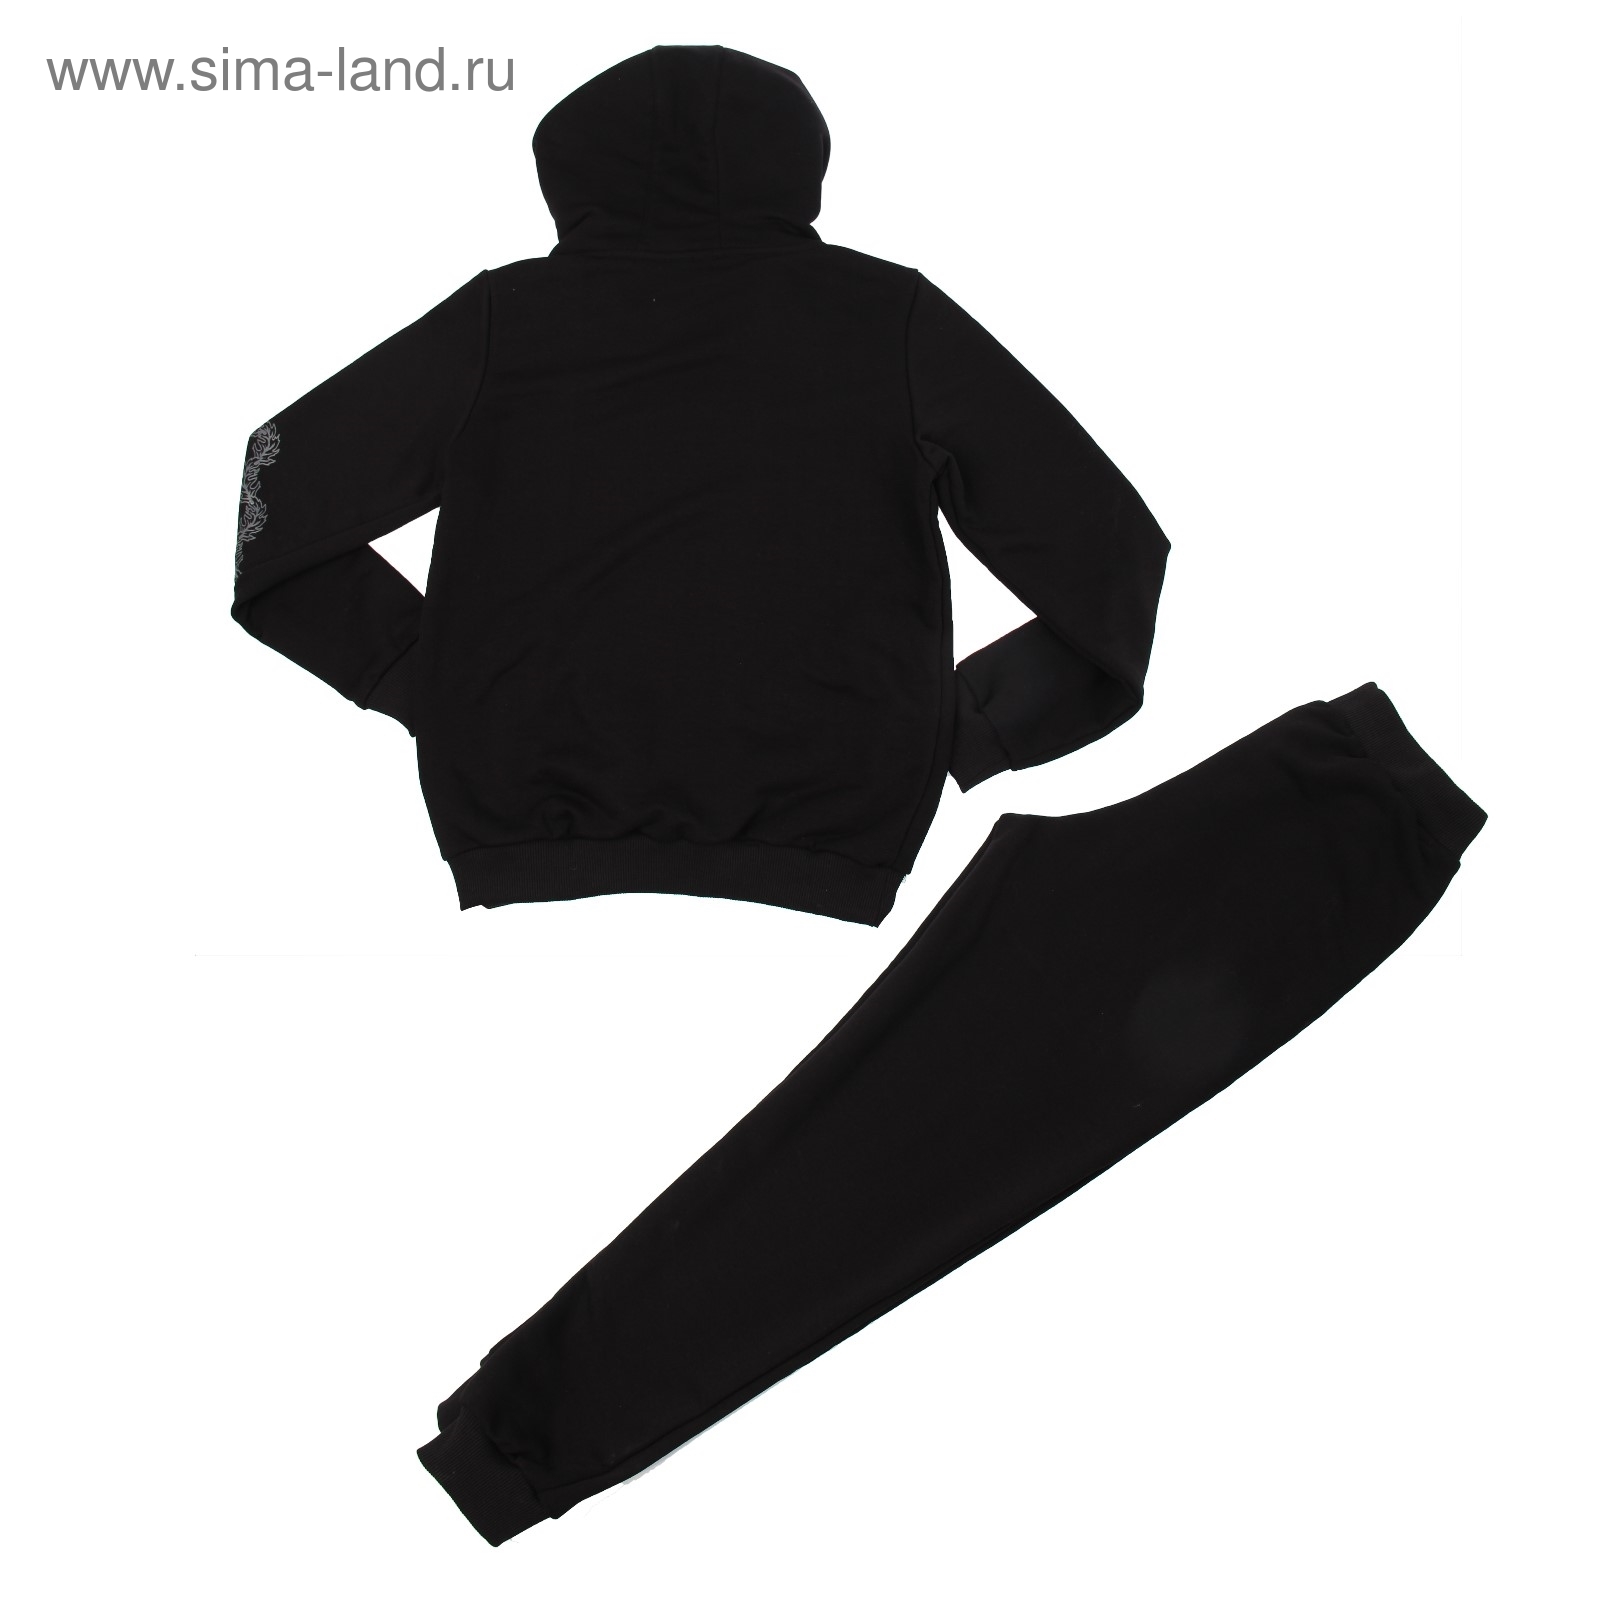 Костюм мужской (толстовка, брюки) М-764-29 черный, р-р 50